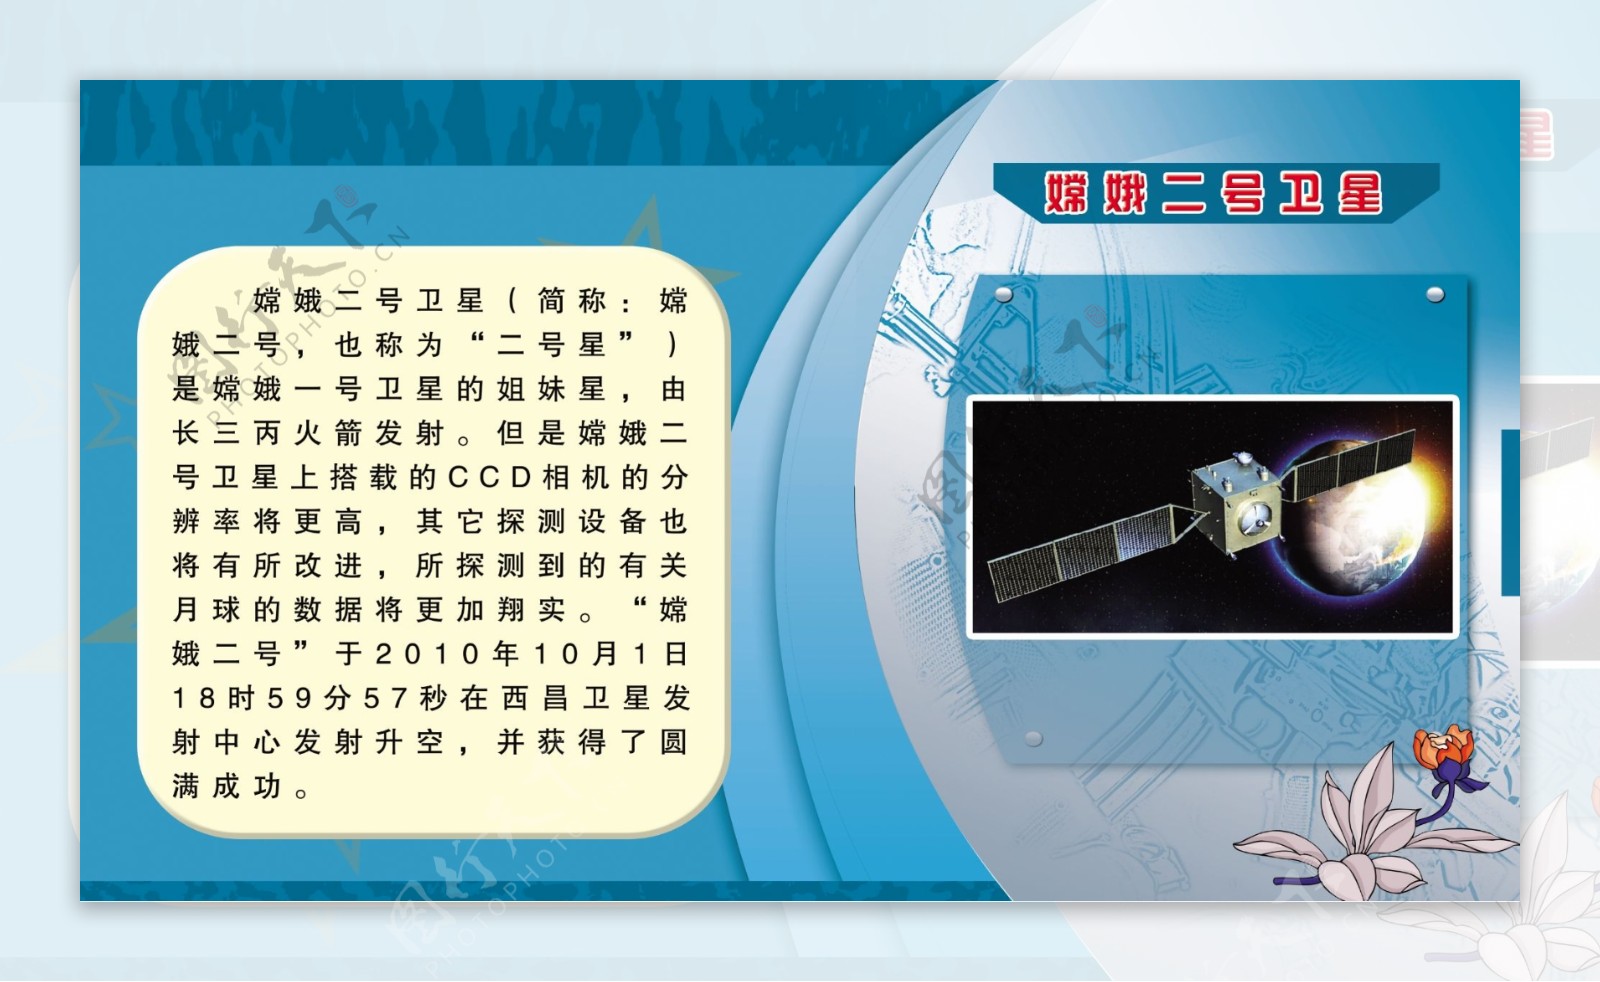 “嫦娥”美图庆中秋 - 中国探月与深空探测网